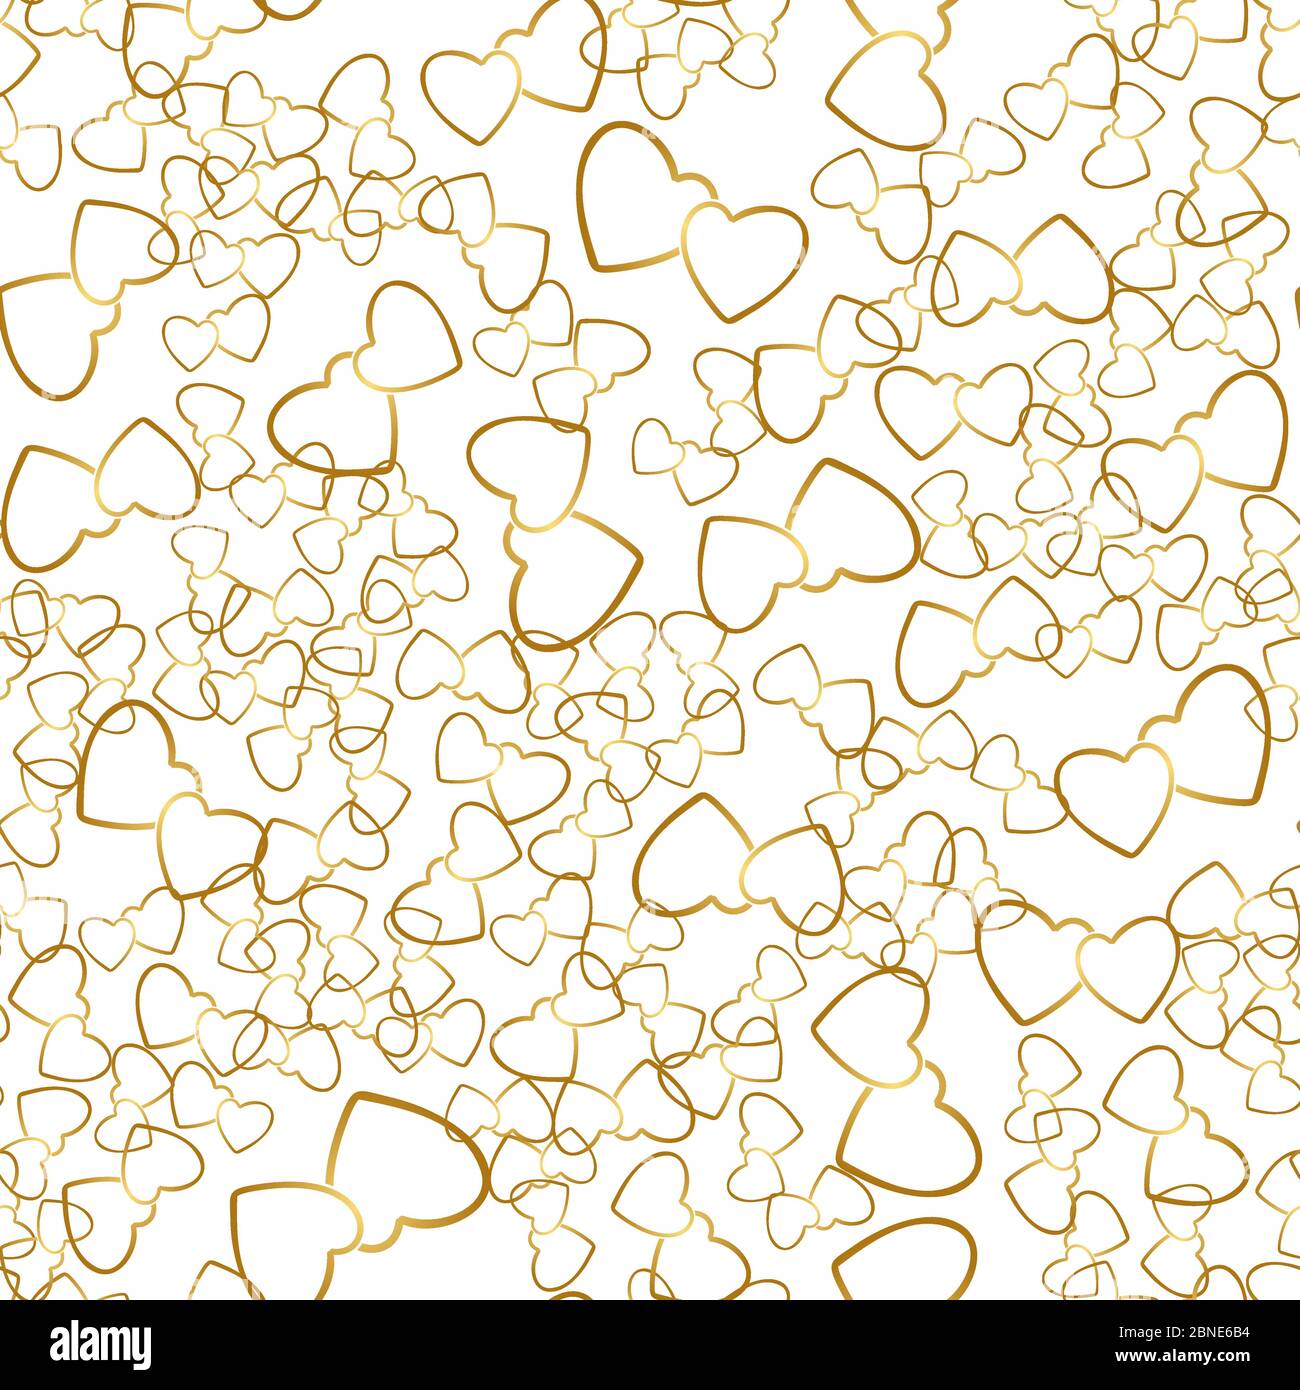 Zwei Herzen nahtloses Muster. Goldene Herzpaare, die zufällig auf weißem Hintergrund platziert werden. Liebe Stil Verpackung Textur für Valentinstag Geschenk oder Stock Vektor